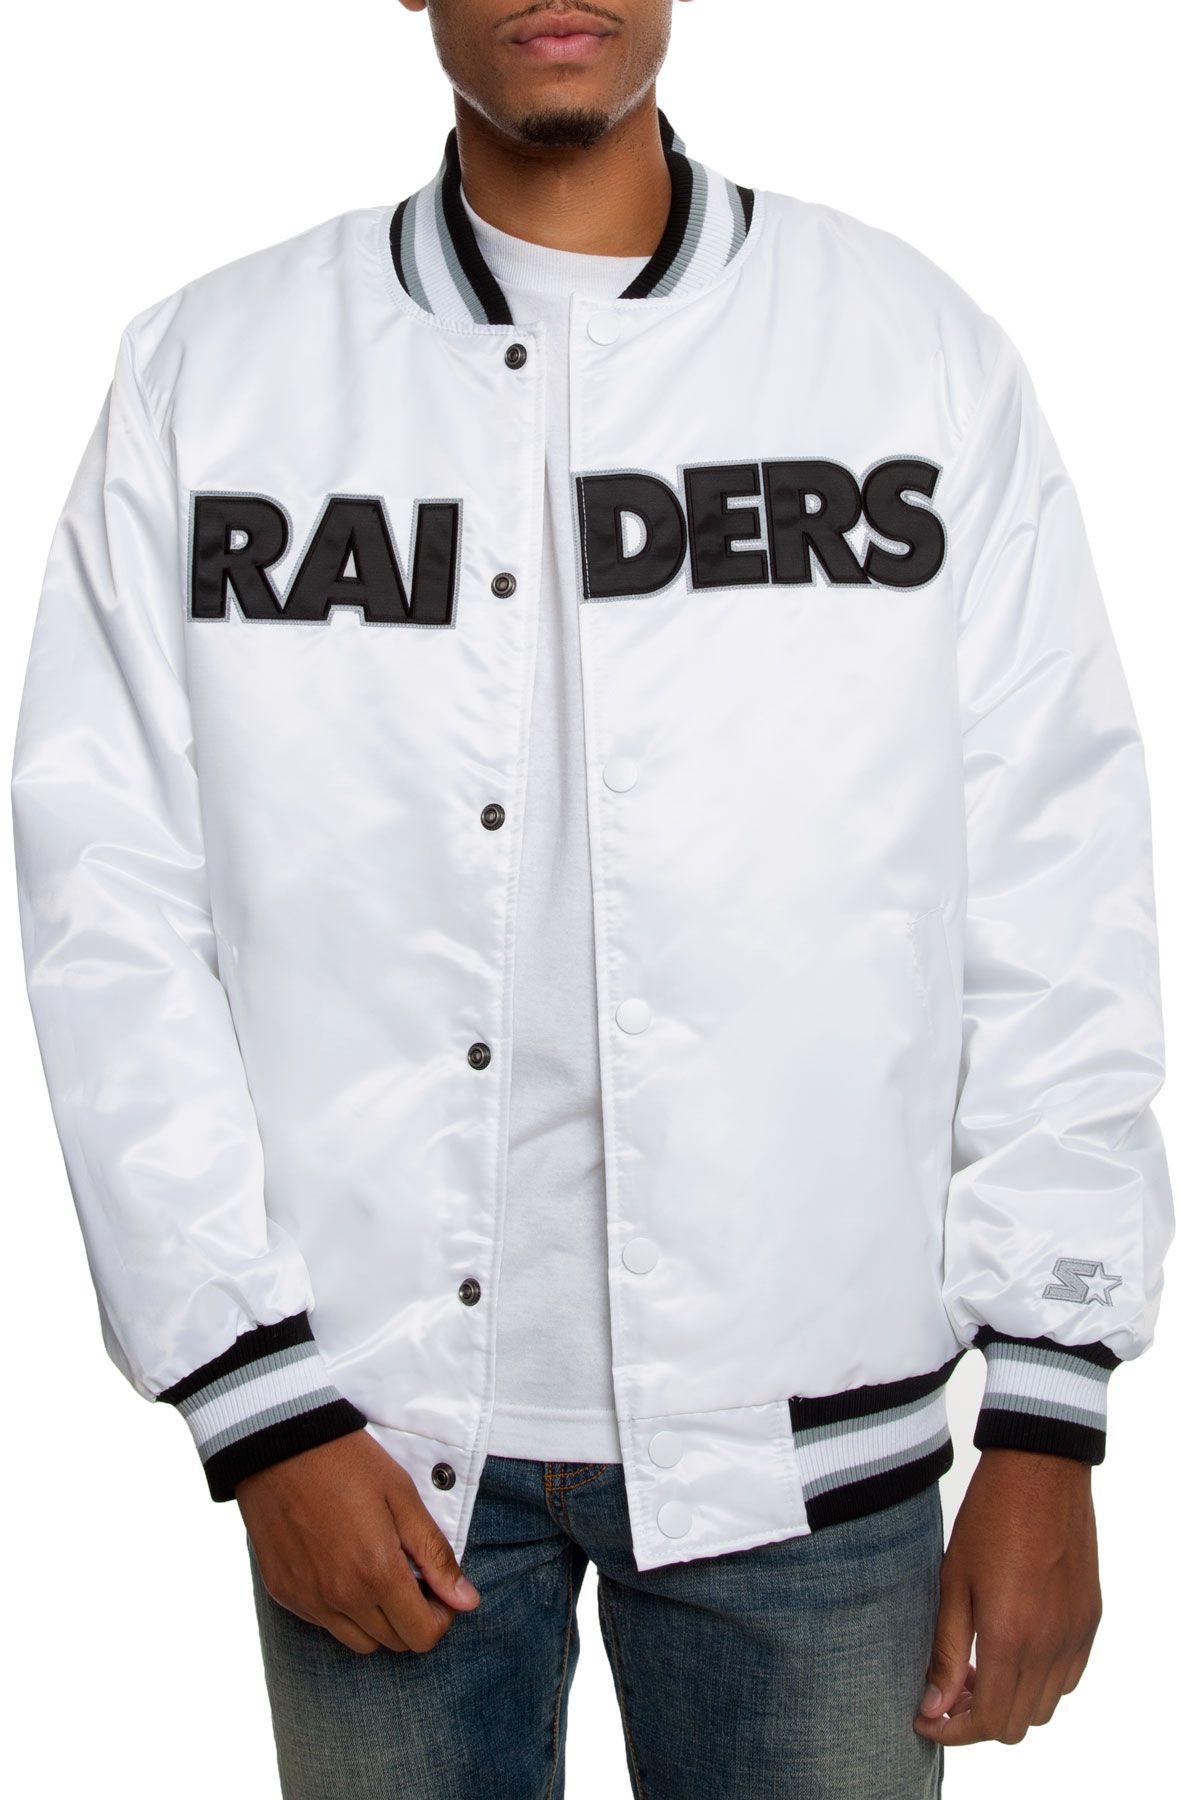 raiders puffer jacket